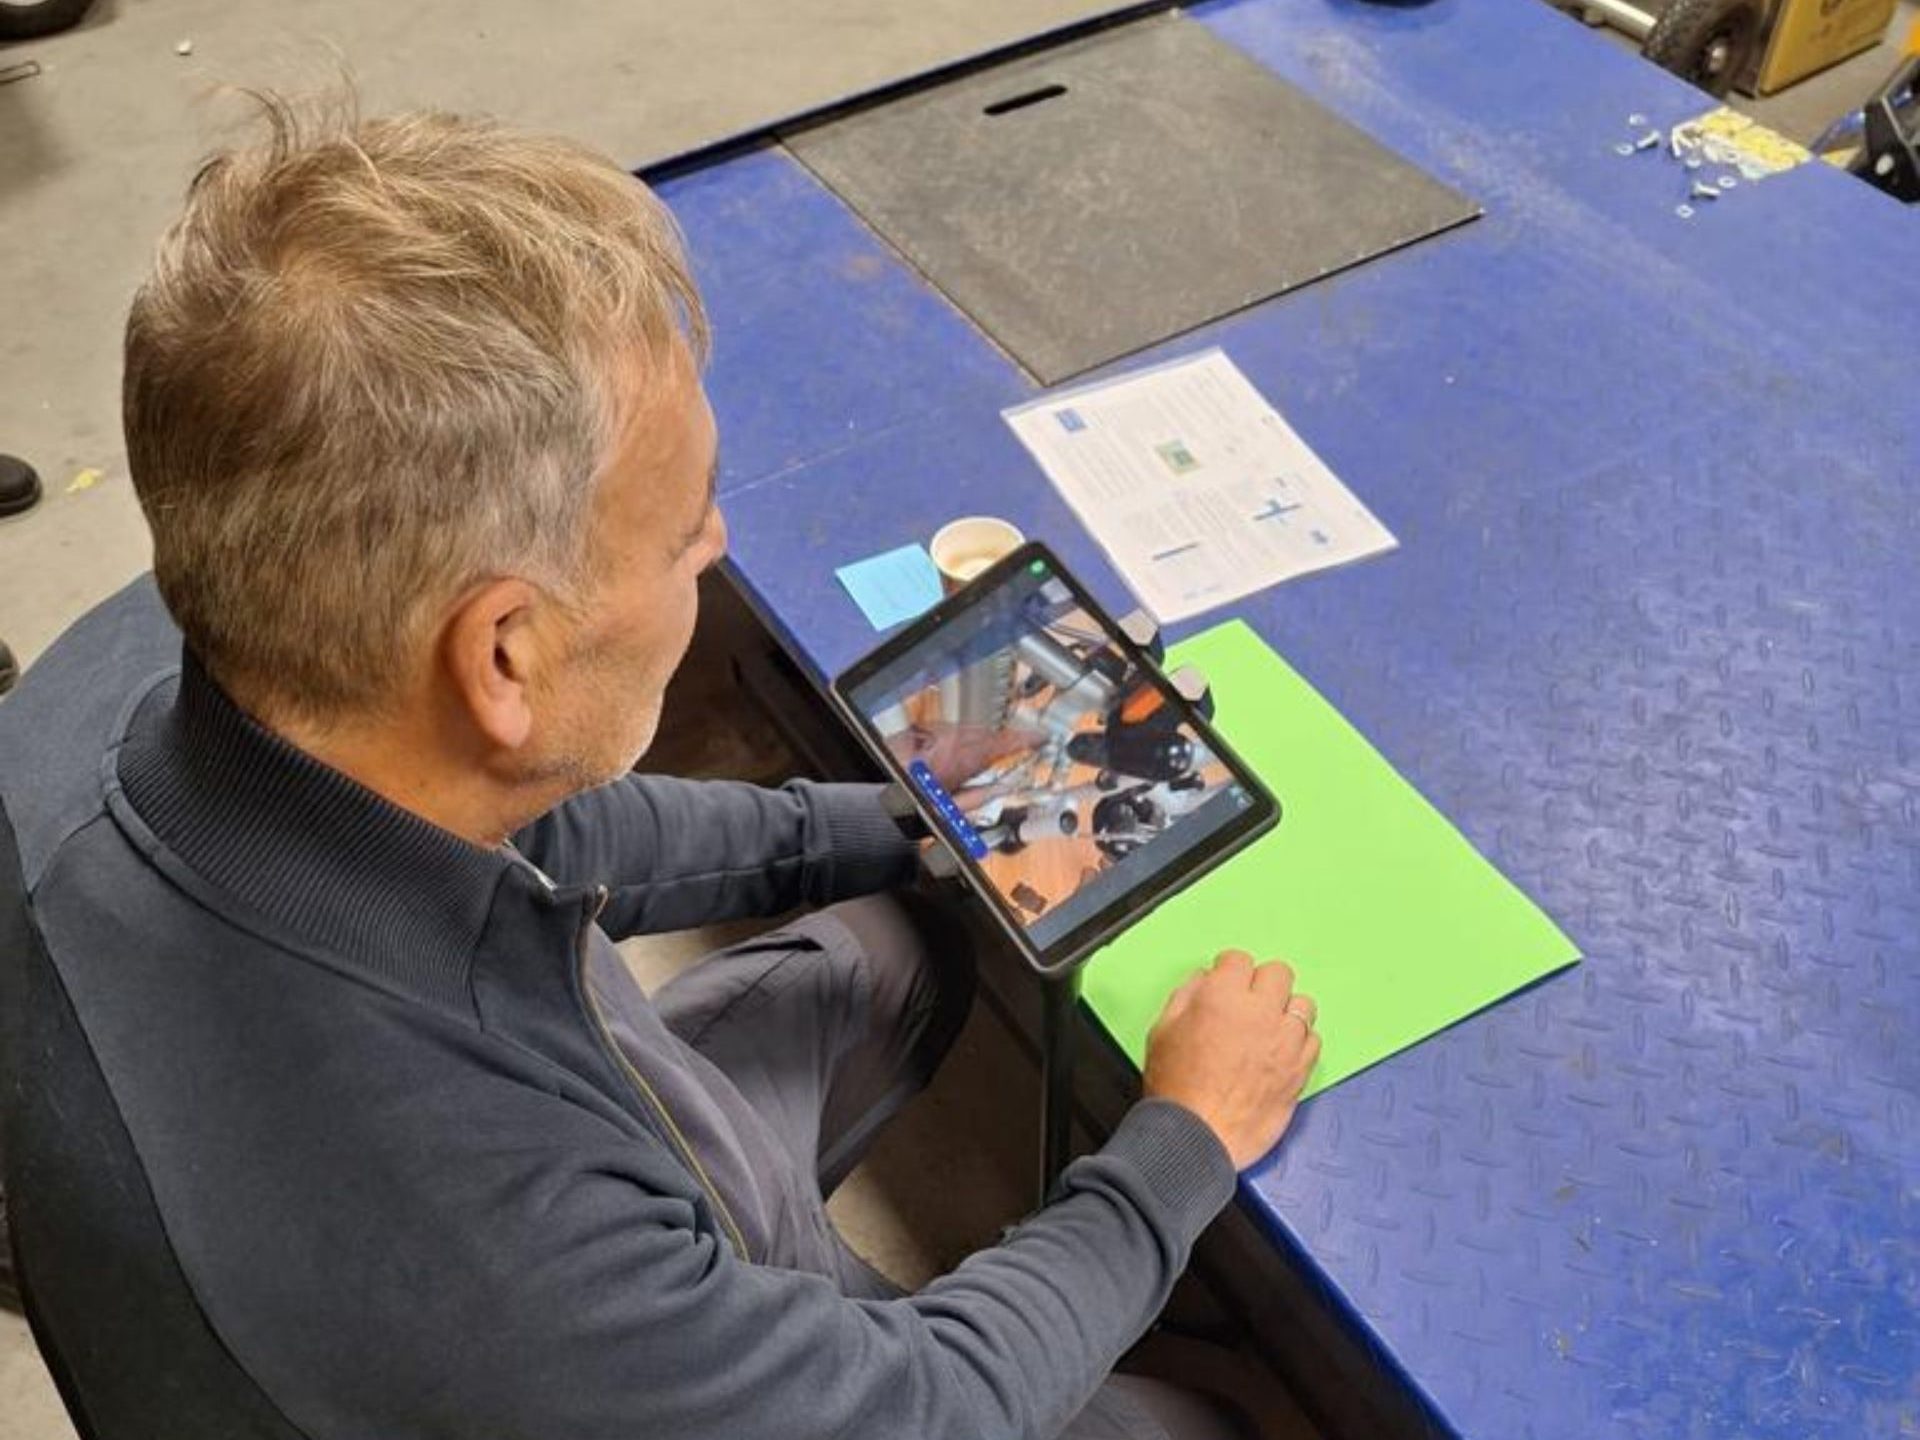 Een persoon kijkt naar een tablet waar te zien is dat hij naar een onderdeel van een hulpmiddel wijst